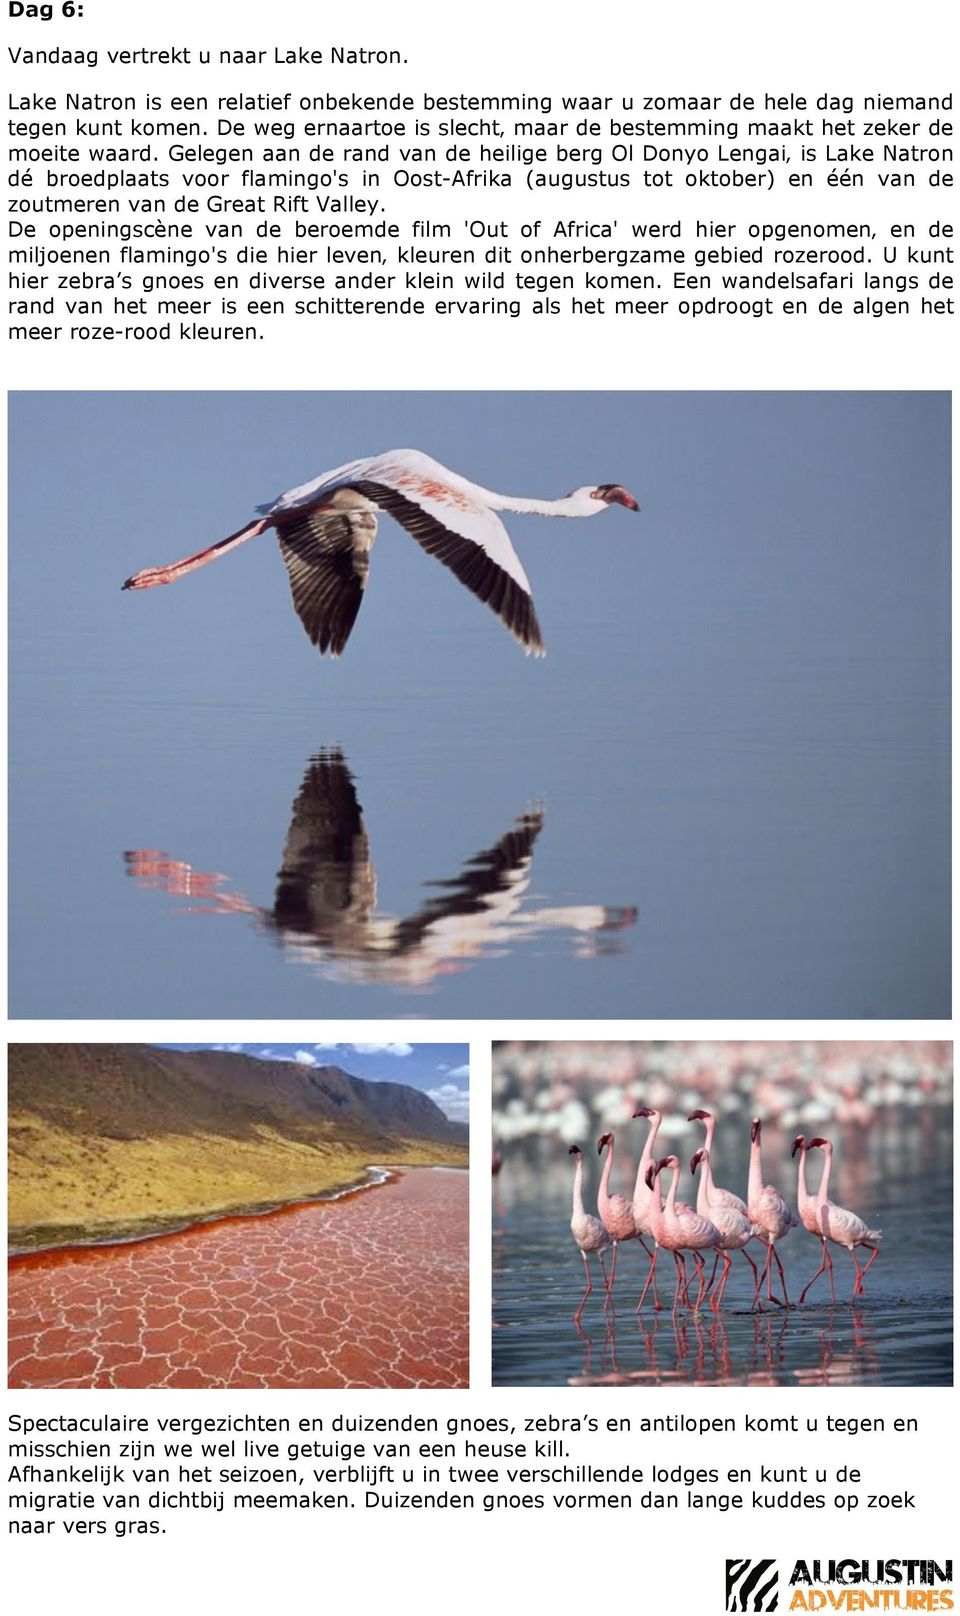 Gelegen aan de rand van de heilige berg Ol Donyo Lengai is Lake Natron dé broedplaats voor flamingo's in Oost-Afrika (augustus tot oktober) en één van de zoutmeren van de Great Rift Valley.